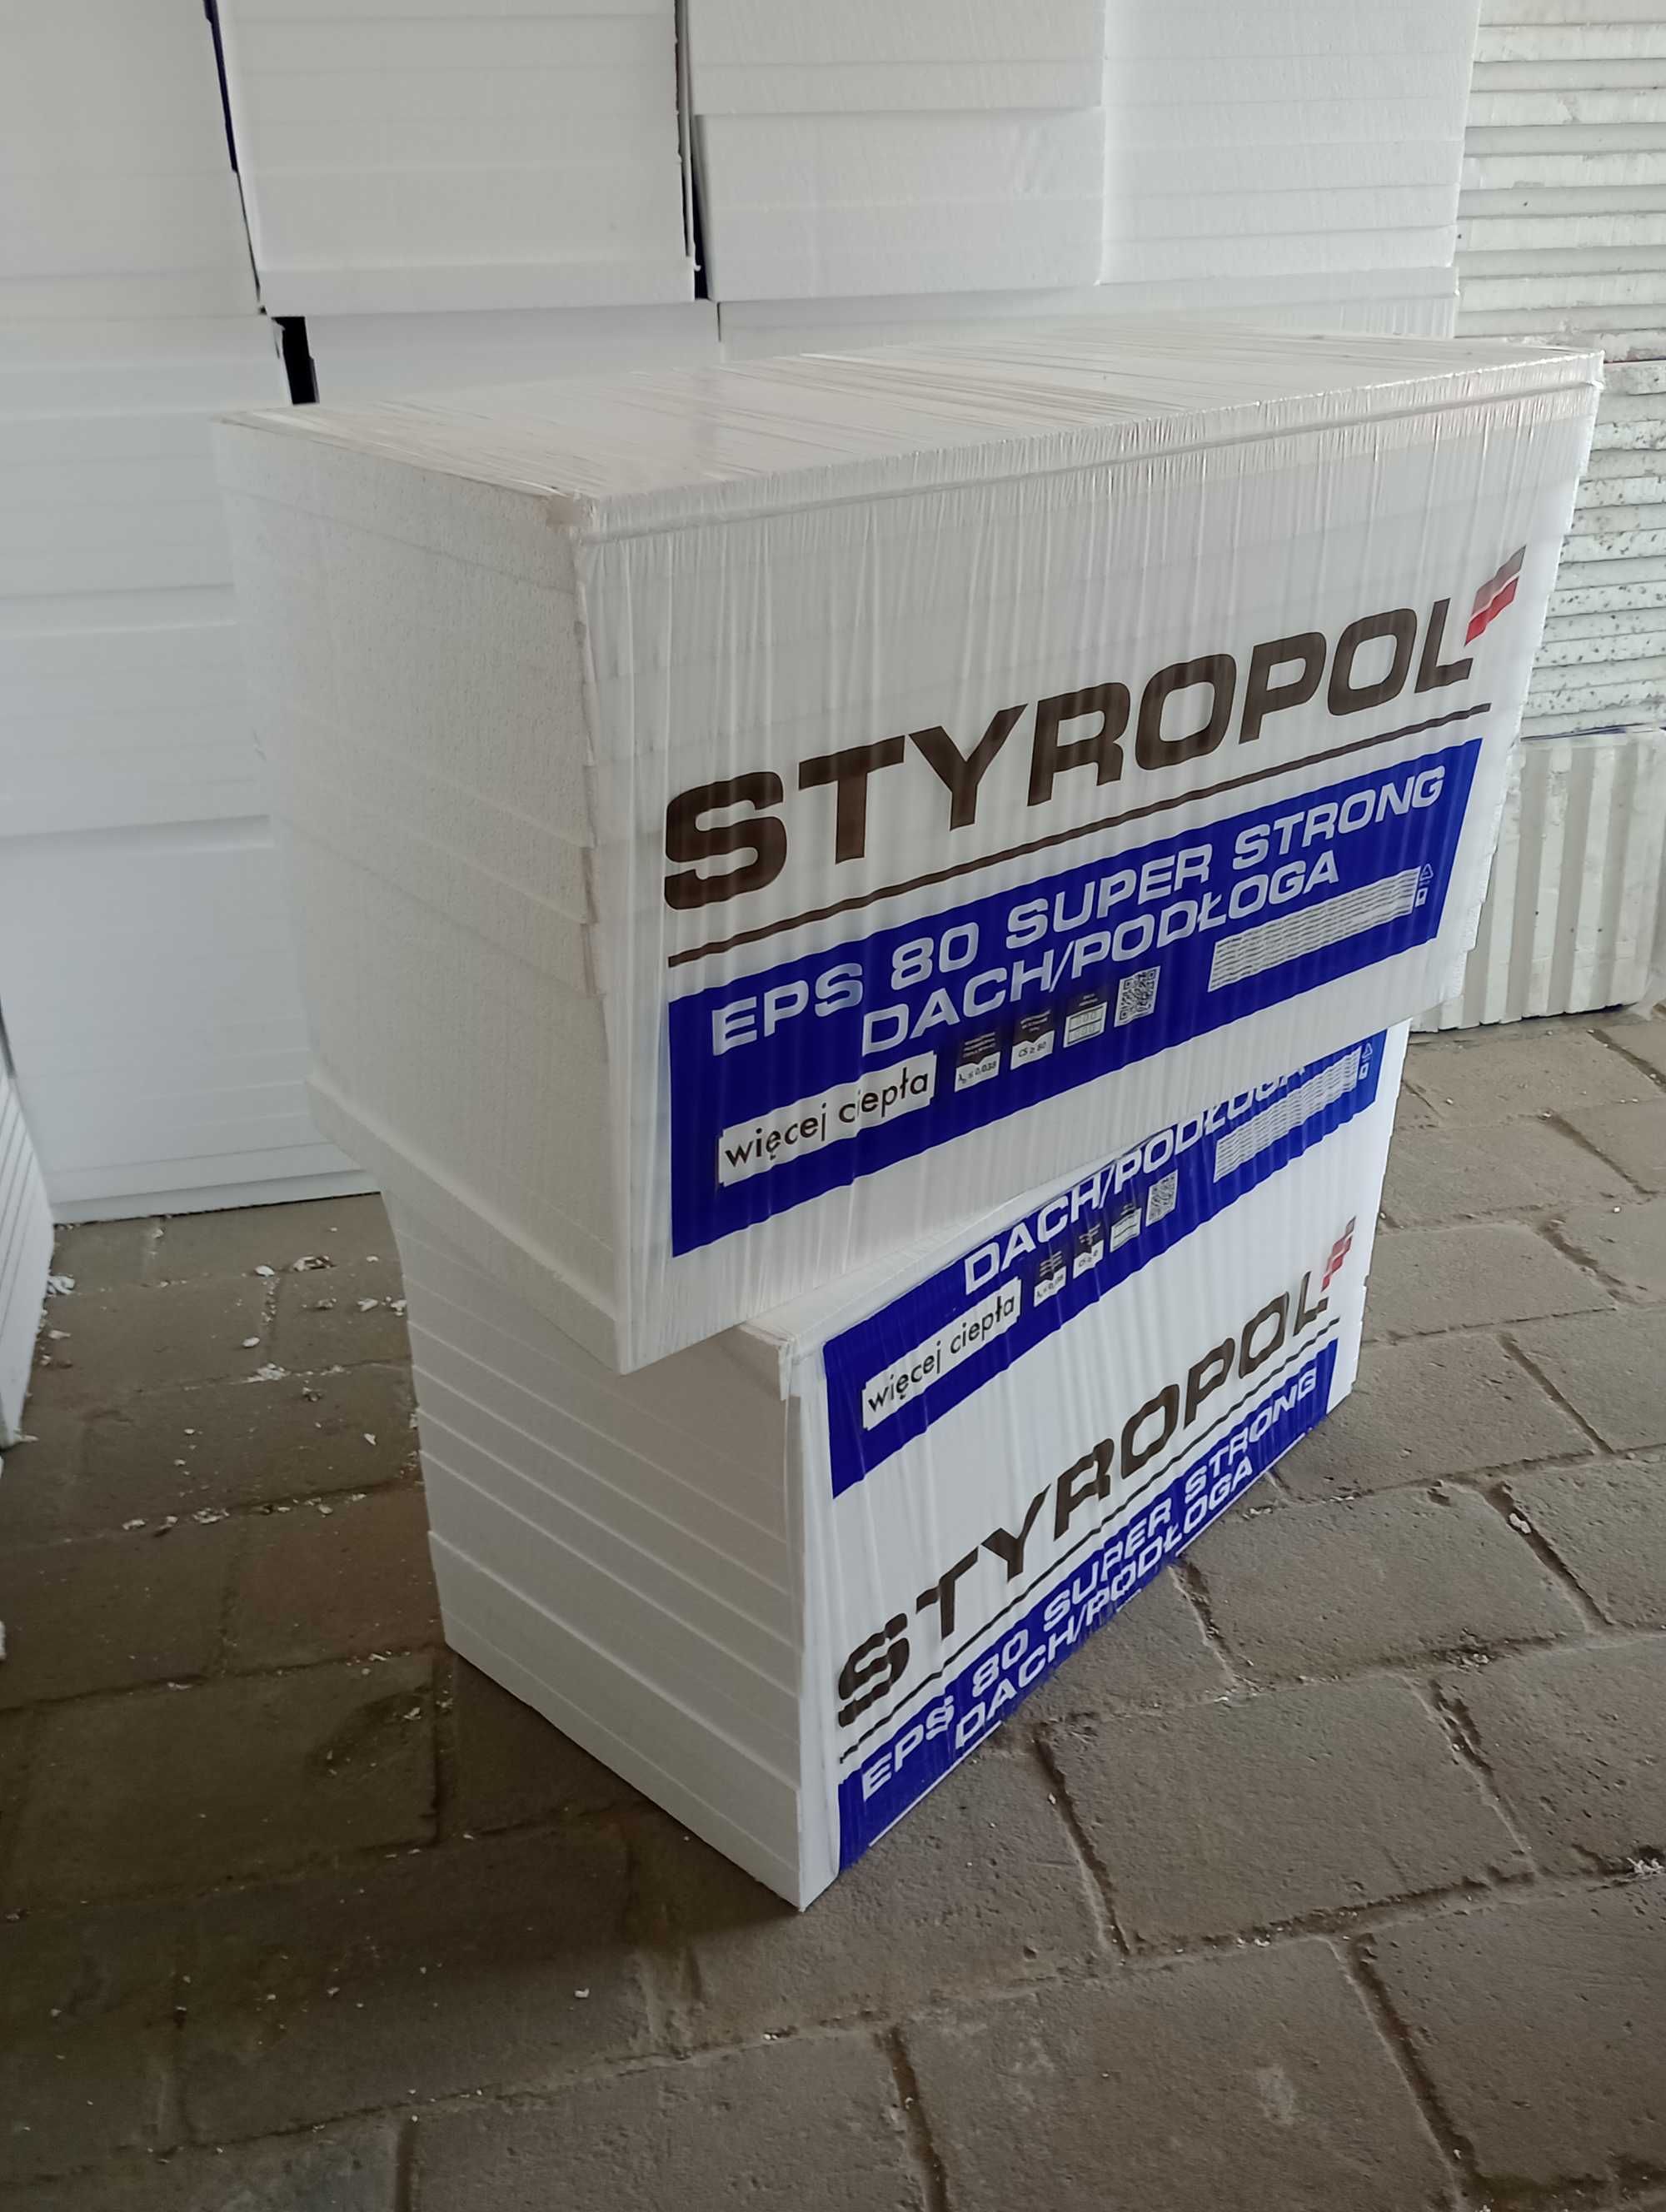 Styropian Dach/Podłoga EPS80-038 5cm Styropol Wylewkowy